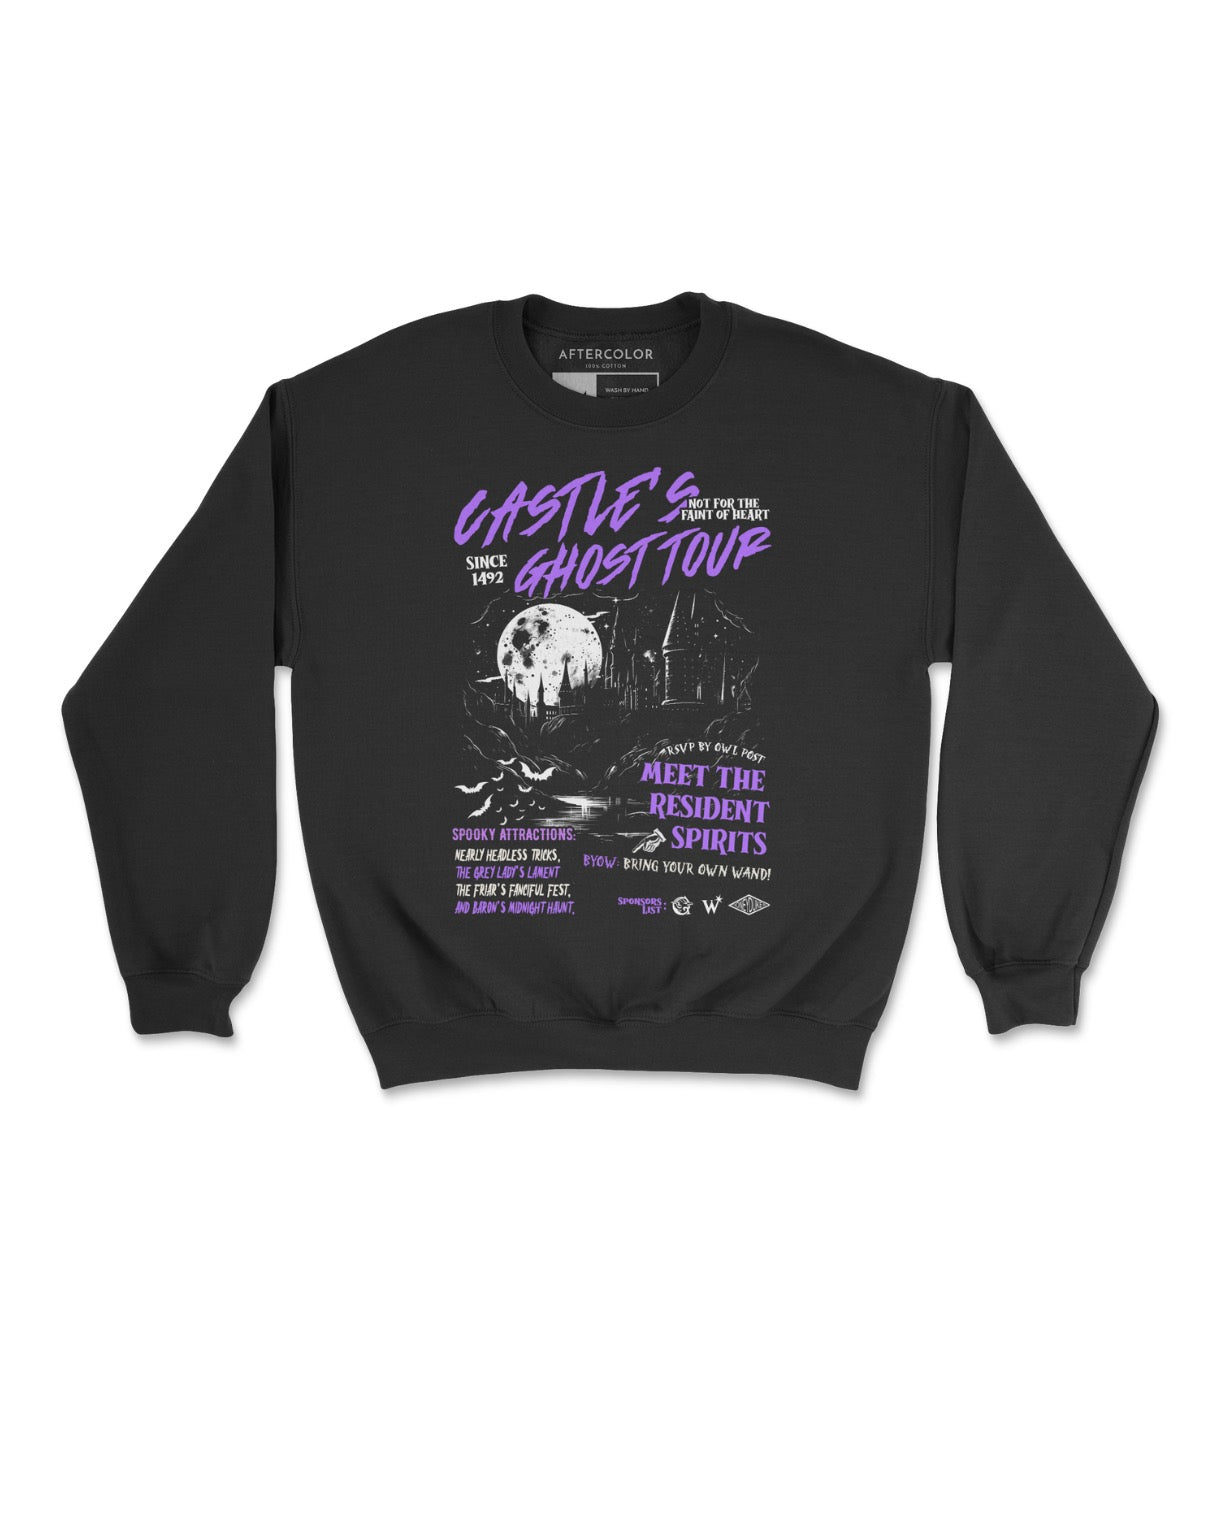 Castle's Ghost Tour Crewneck Sweatshirt